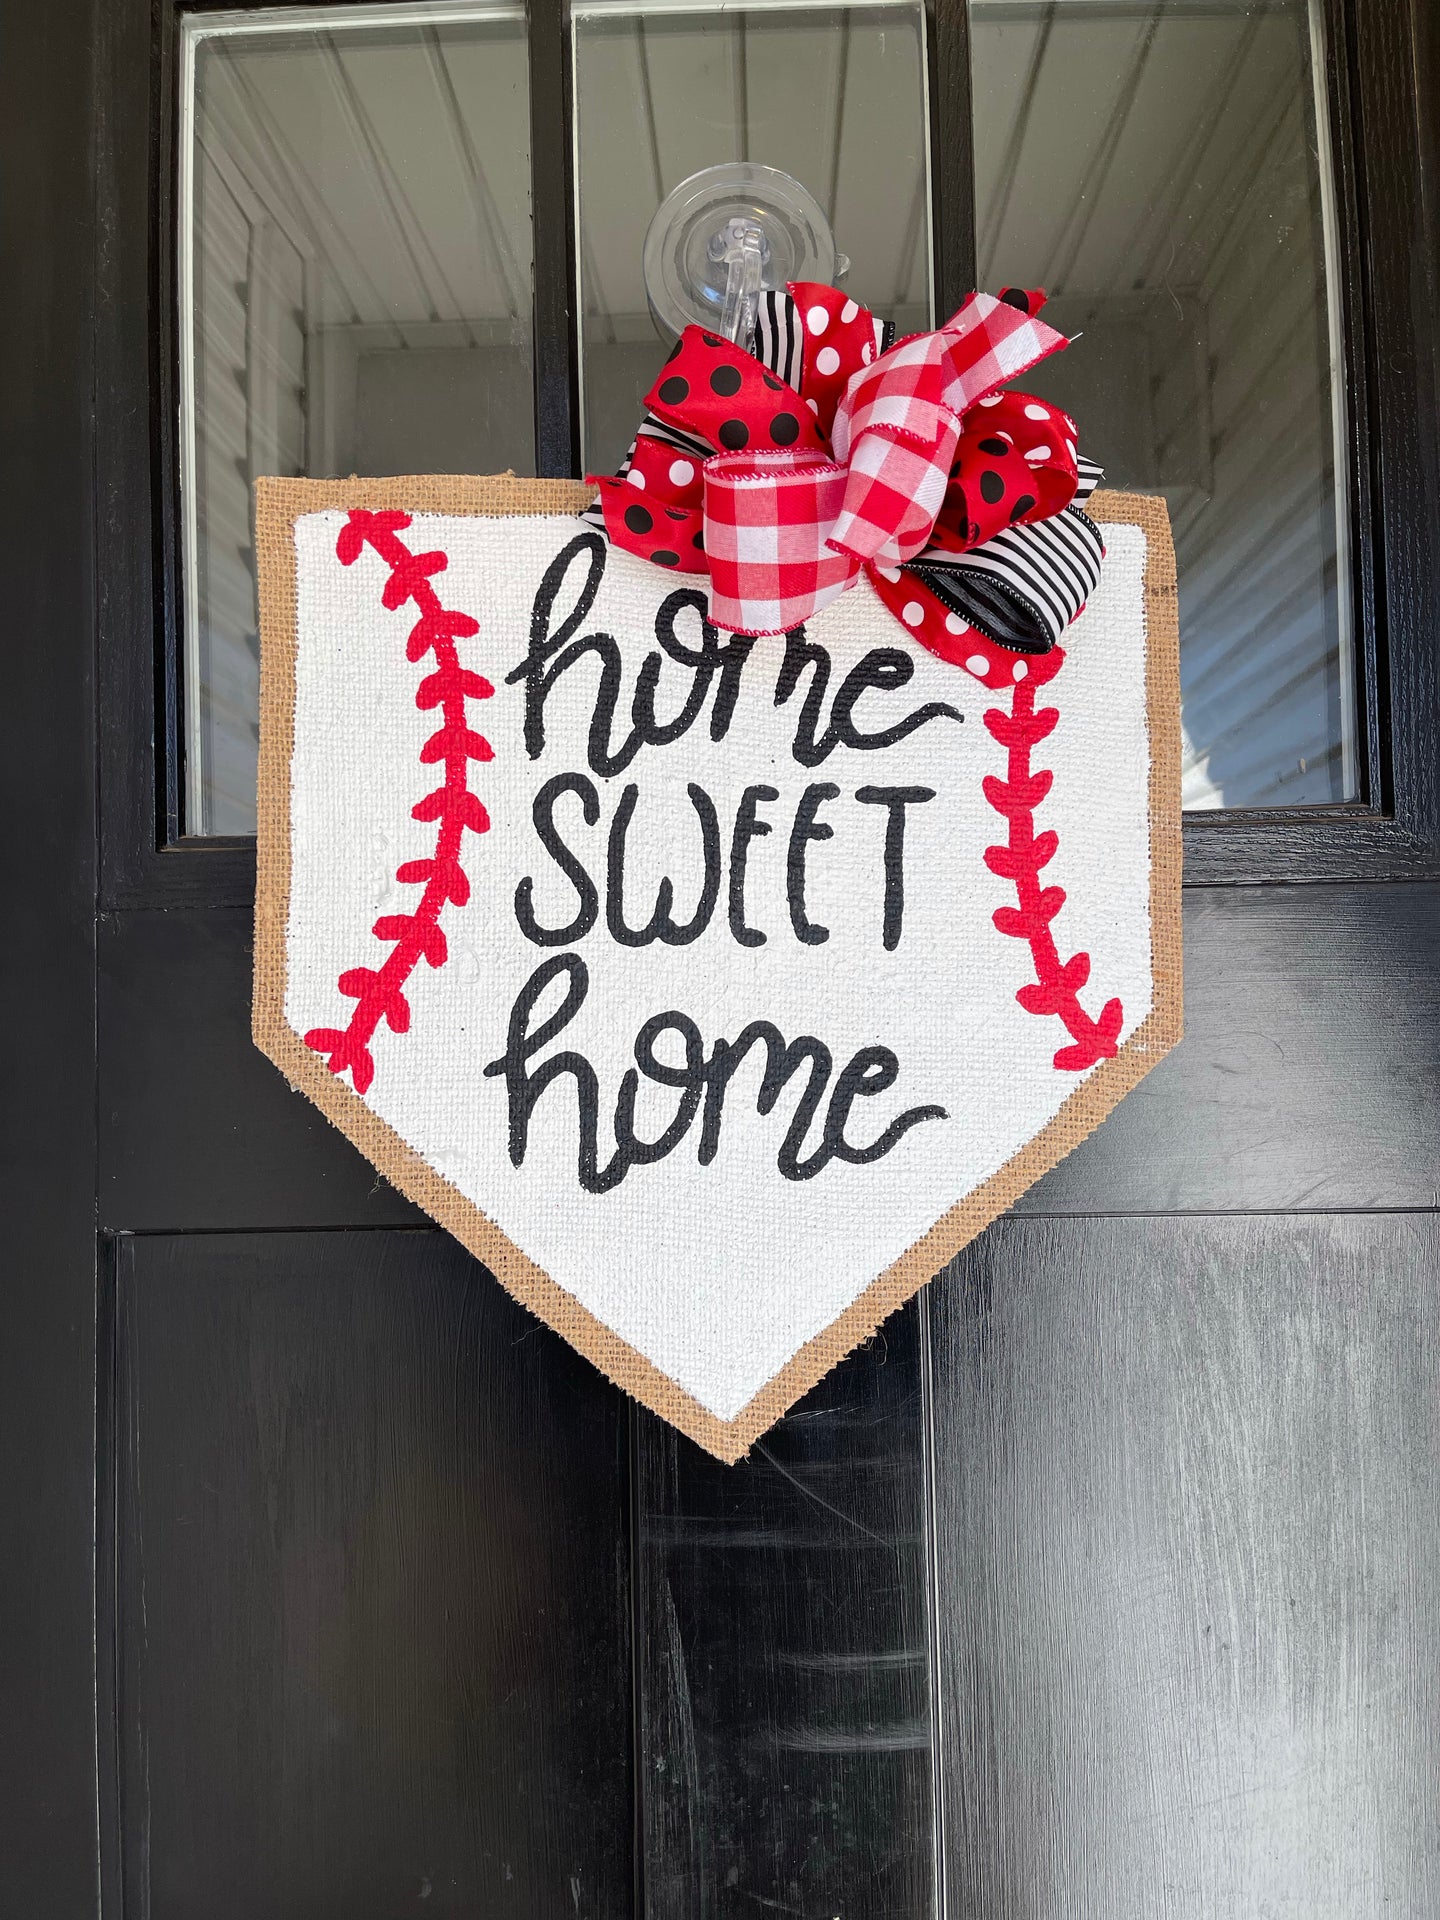 Baseball Home Plate Door Hanger in Home Sweet Home